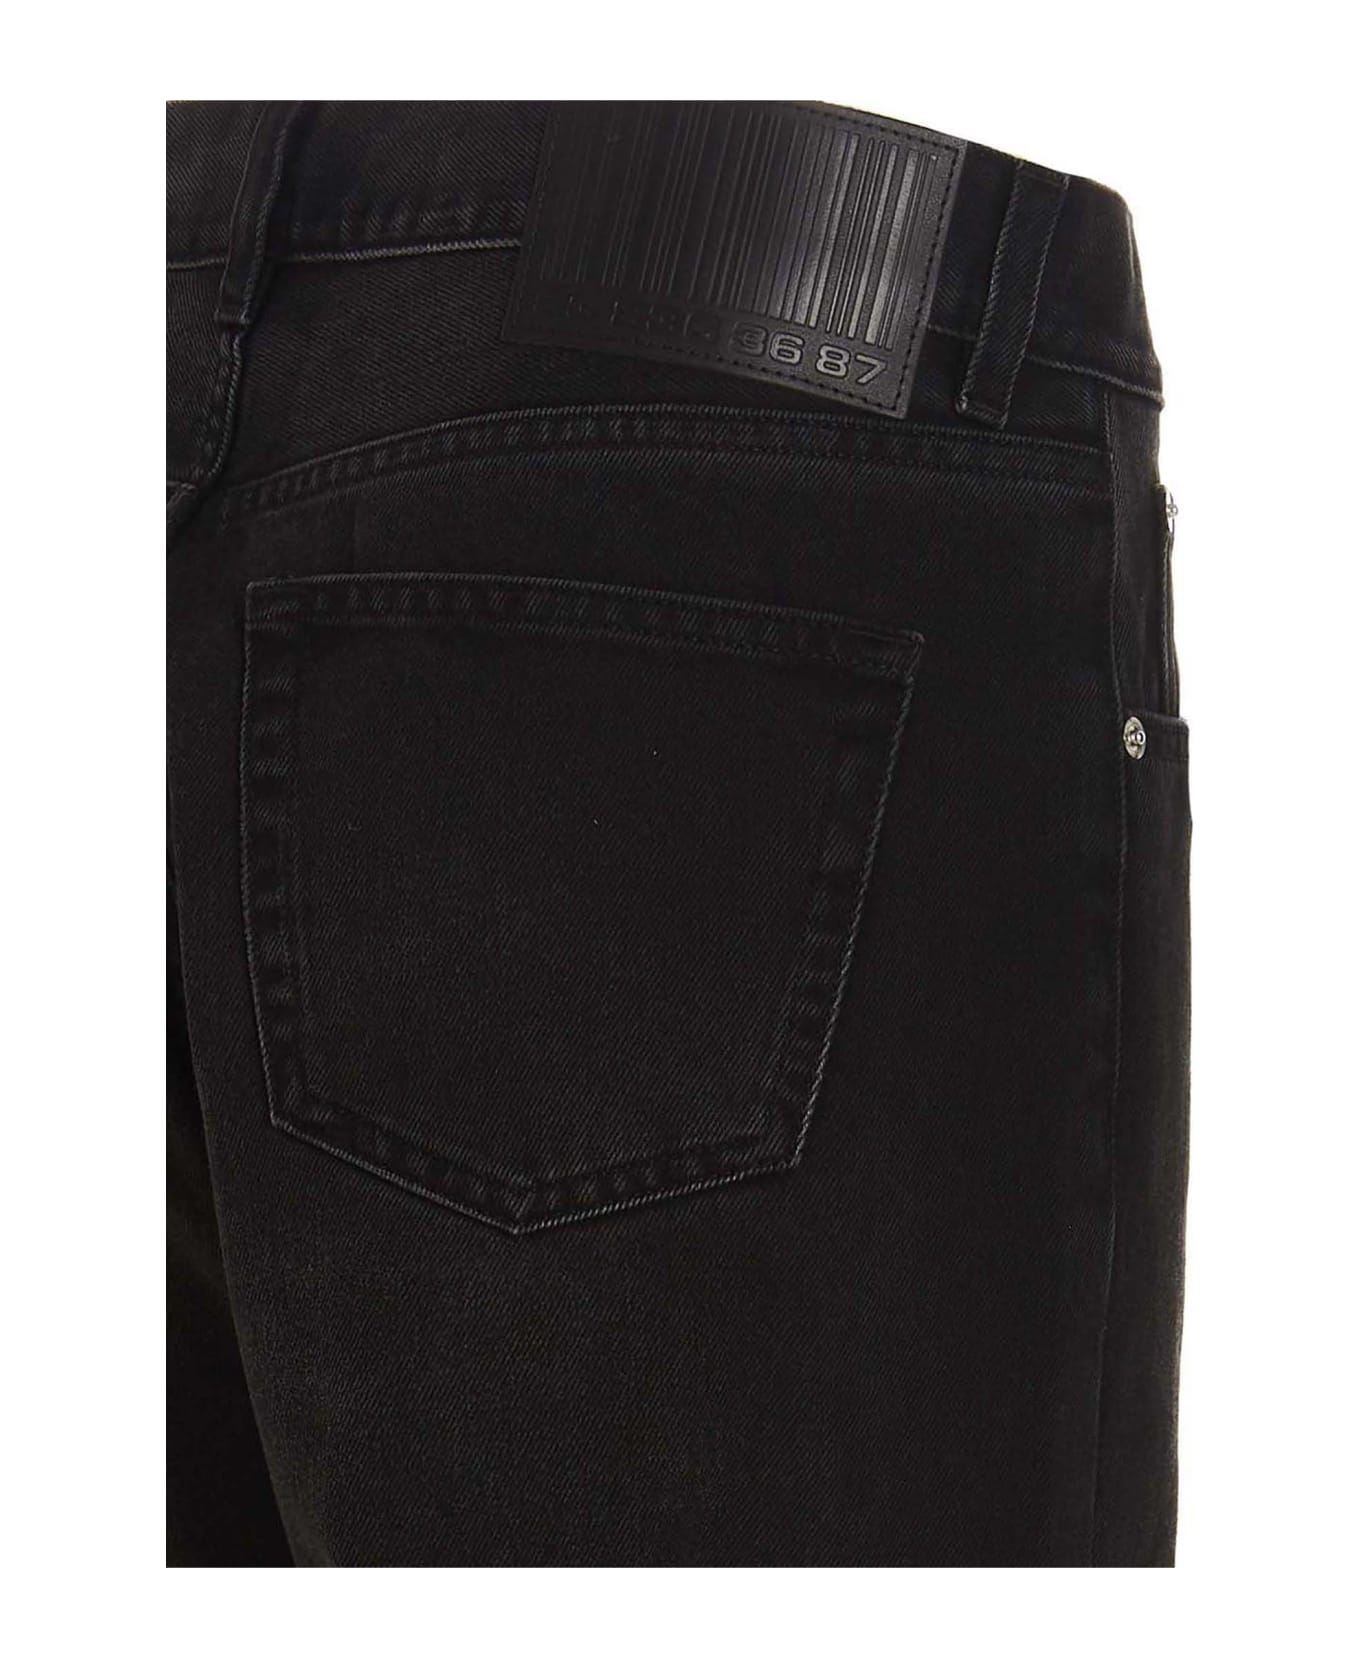 VTMNTS 5-pocket Jeans - Black   デニム